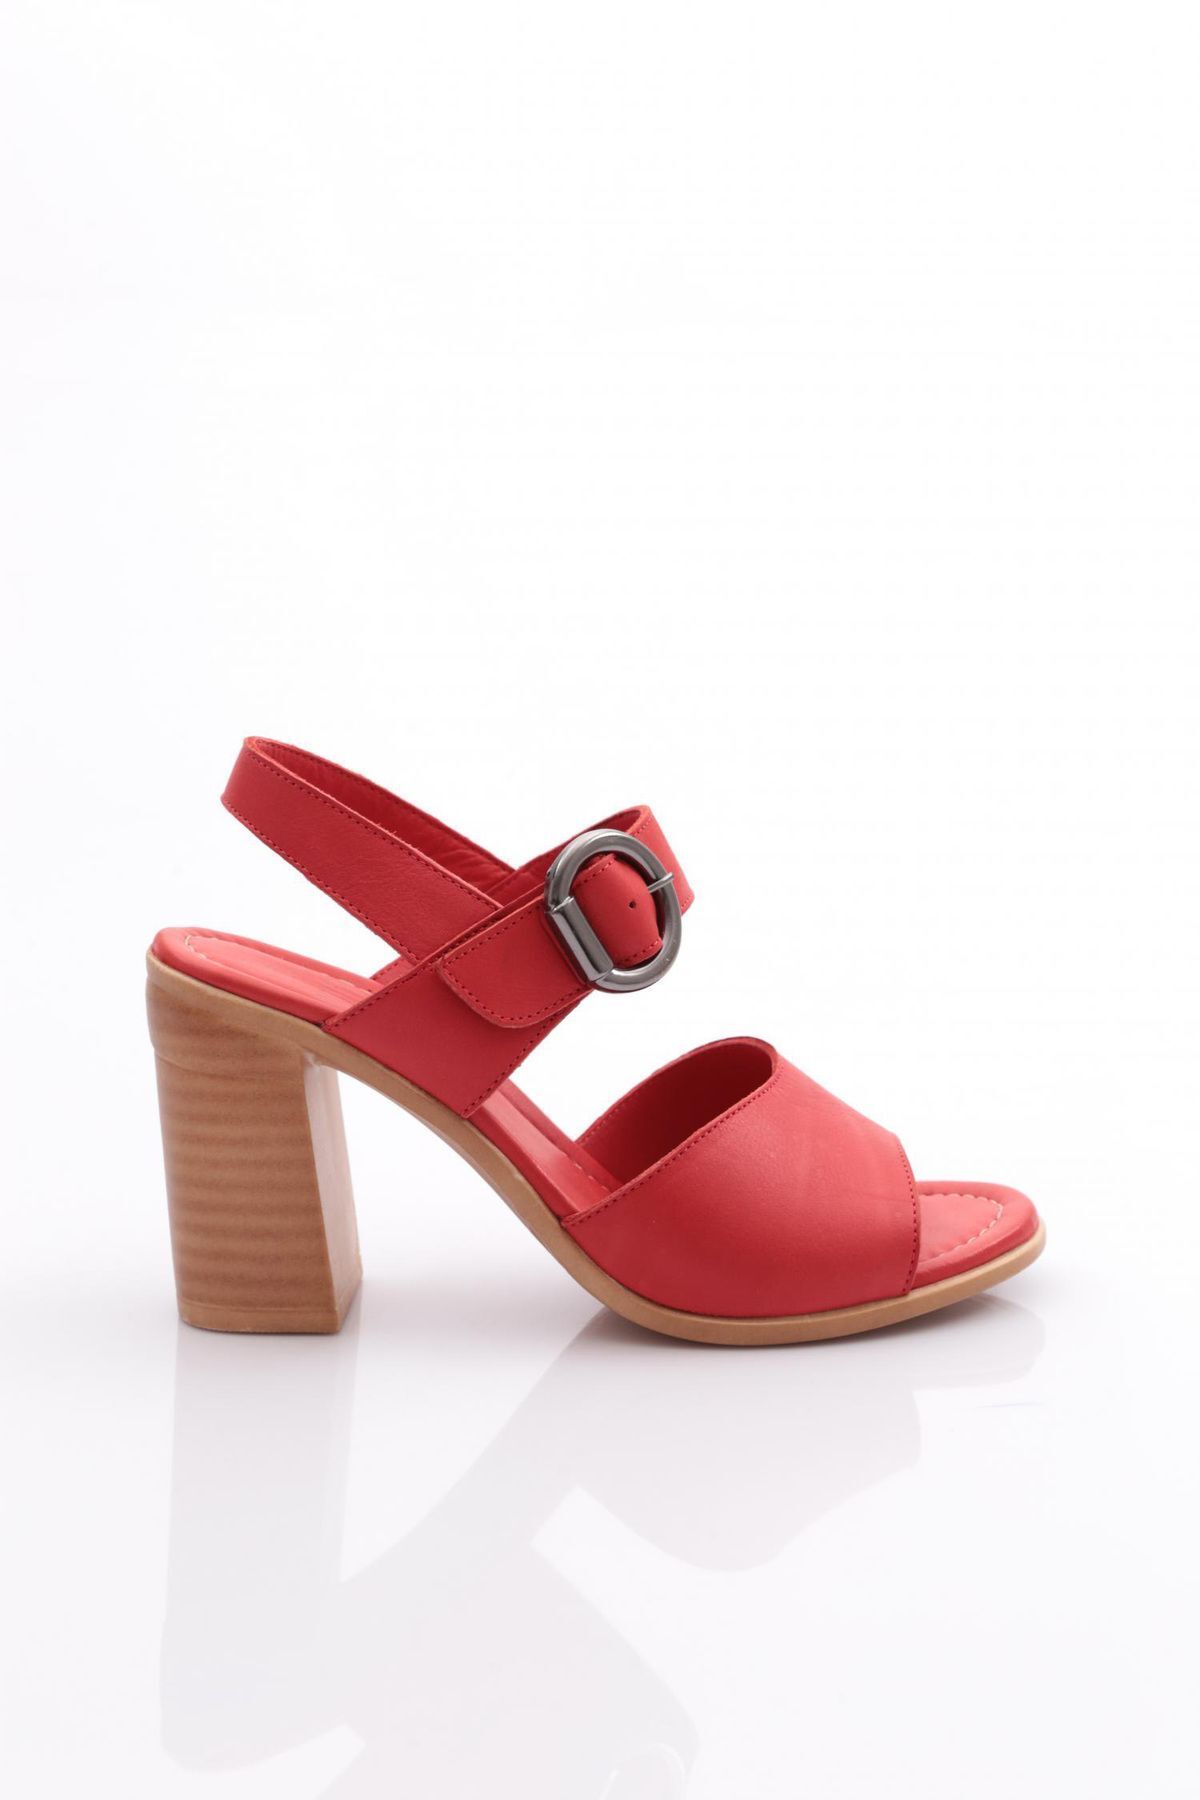 Dgn 1170 Kadın Topuklu Sandalet Kırmızı